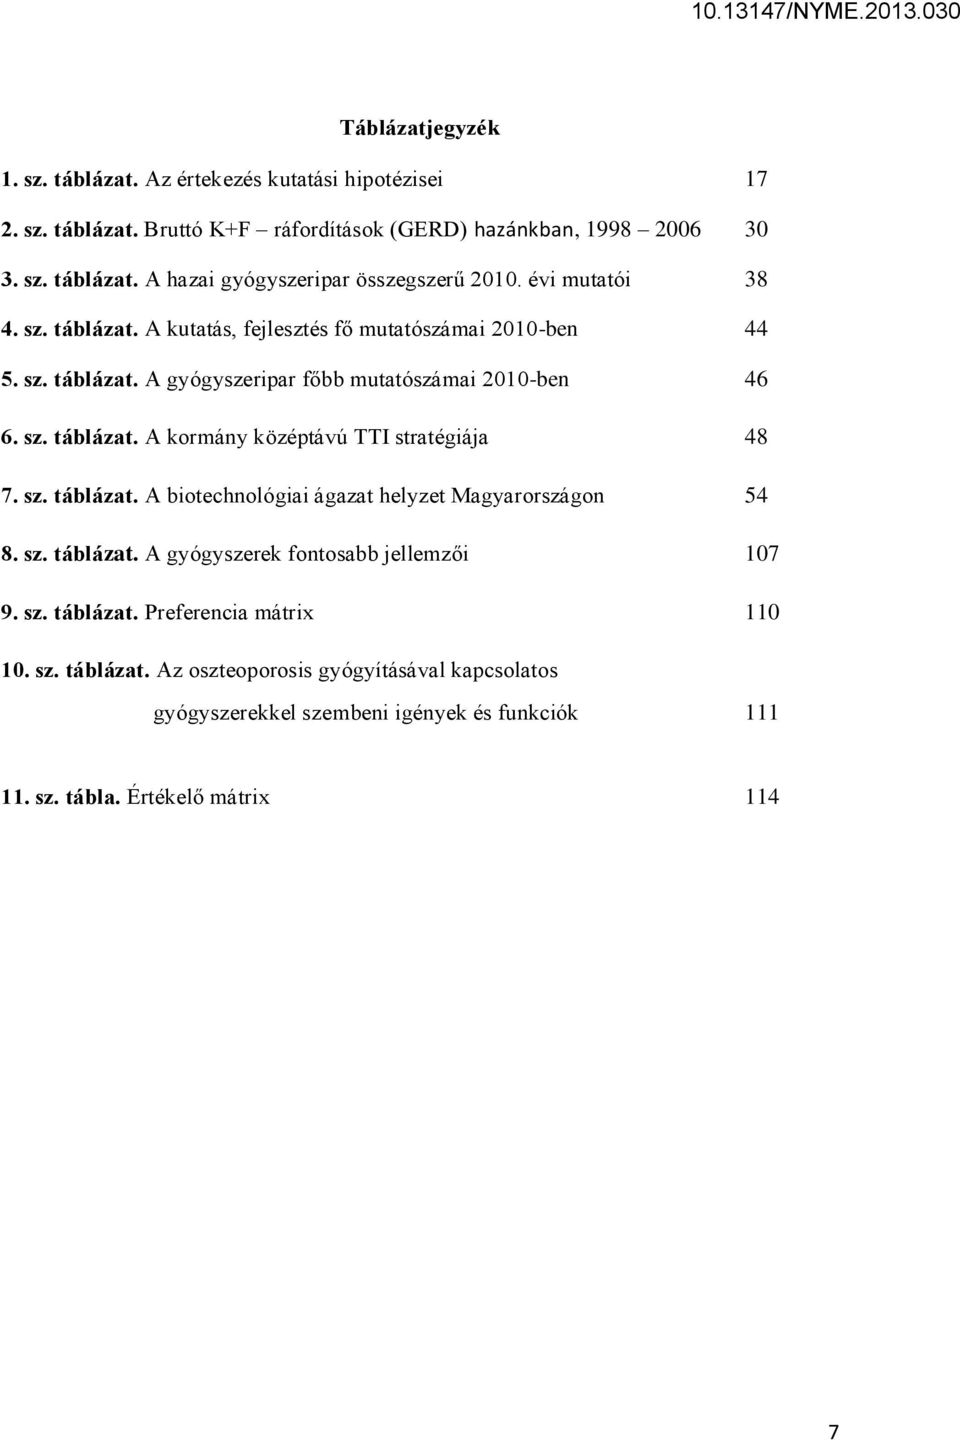 sz. táblázat. A biotechnológiai ágazat helyzet Magyarországon 54 8. sz. táblázat. A gyógyszerek fontosabb jellemzői 107 9. sz. táblázat. Preferencia mátrix 110 10. sz. táblázat. Az oszteoporosis gyógyításával kapcsolatos gyógyszerekkel szembeni igények és funkciók 111 11.